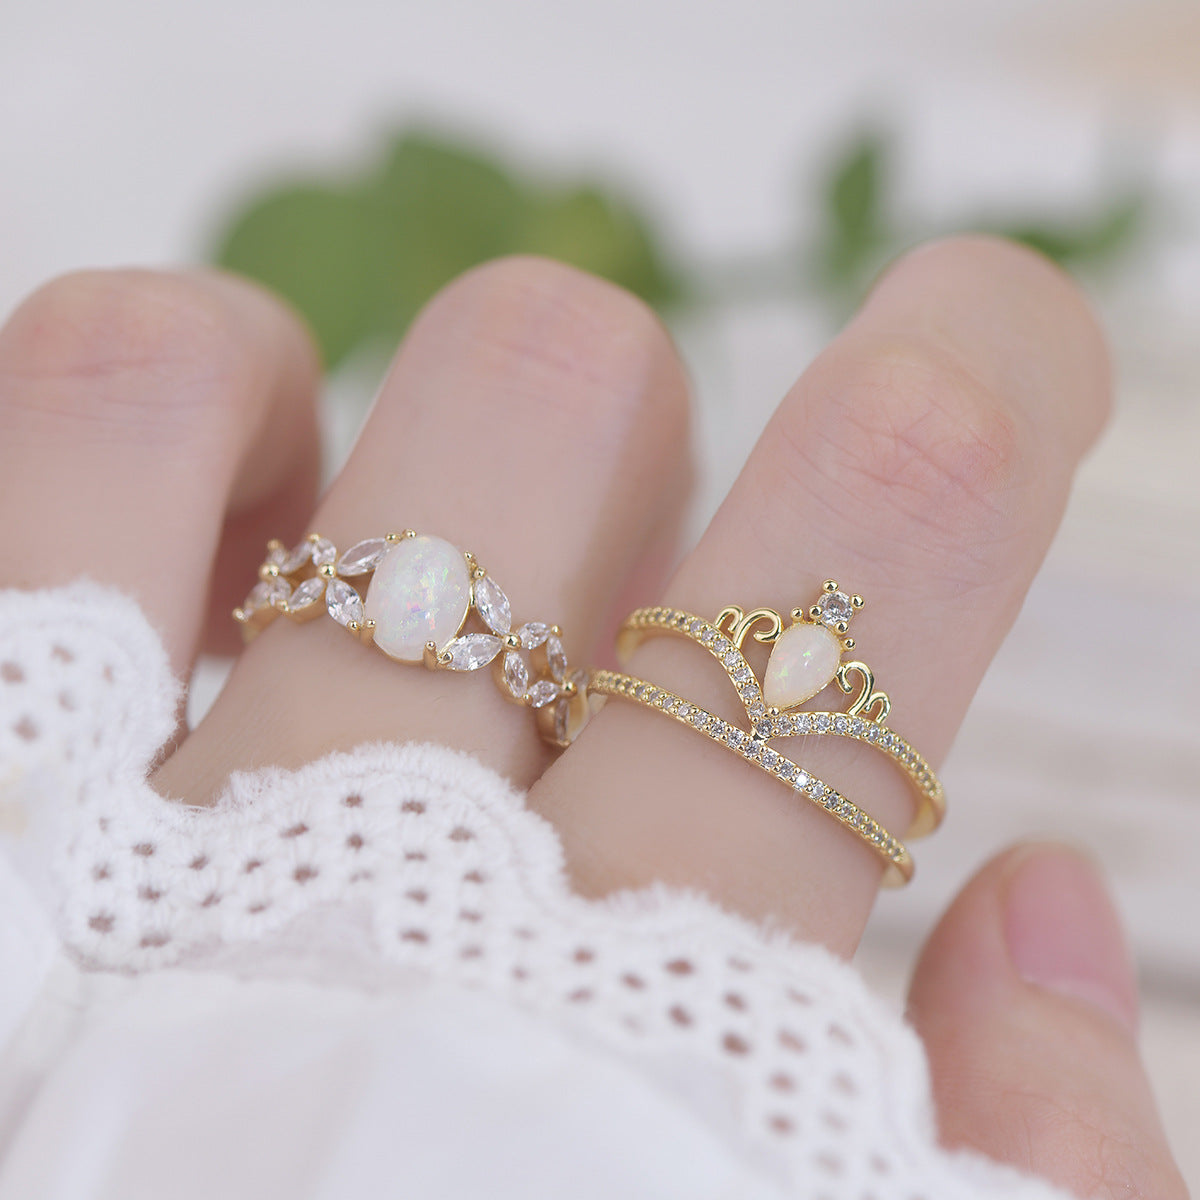 Opal Tiara Ring Set